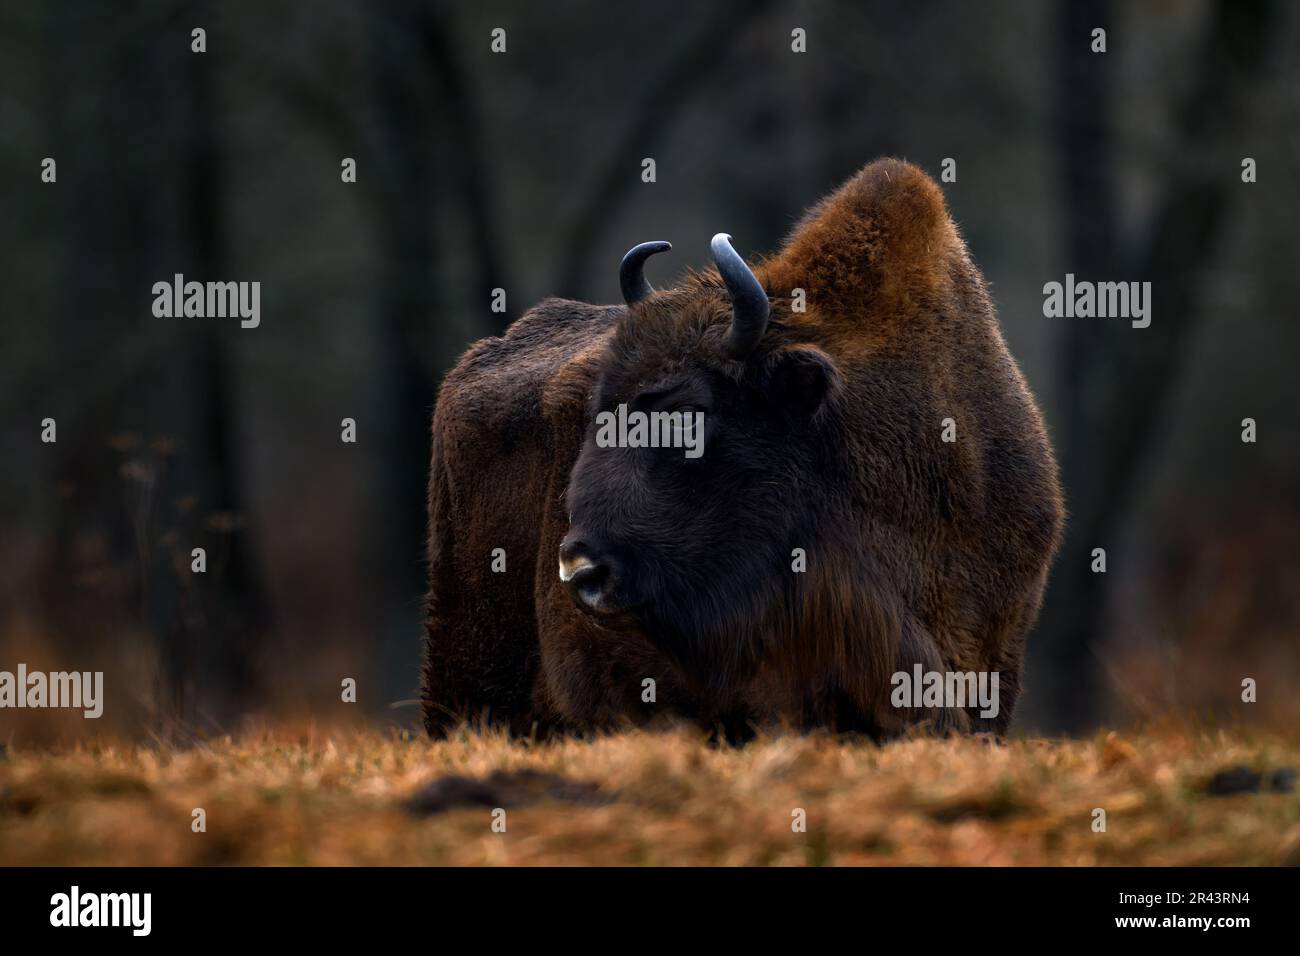 Bisonte nella foresta autunnale, scena soleggiata con grande animale marrone nell'habitat naturale, foglie gialle sugli alberi da pioggia, Bialowieza NP, Polonia. Fauna selvatica Foto Stock